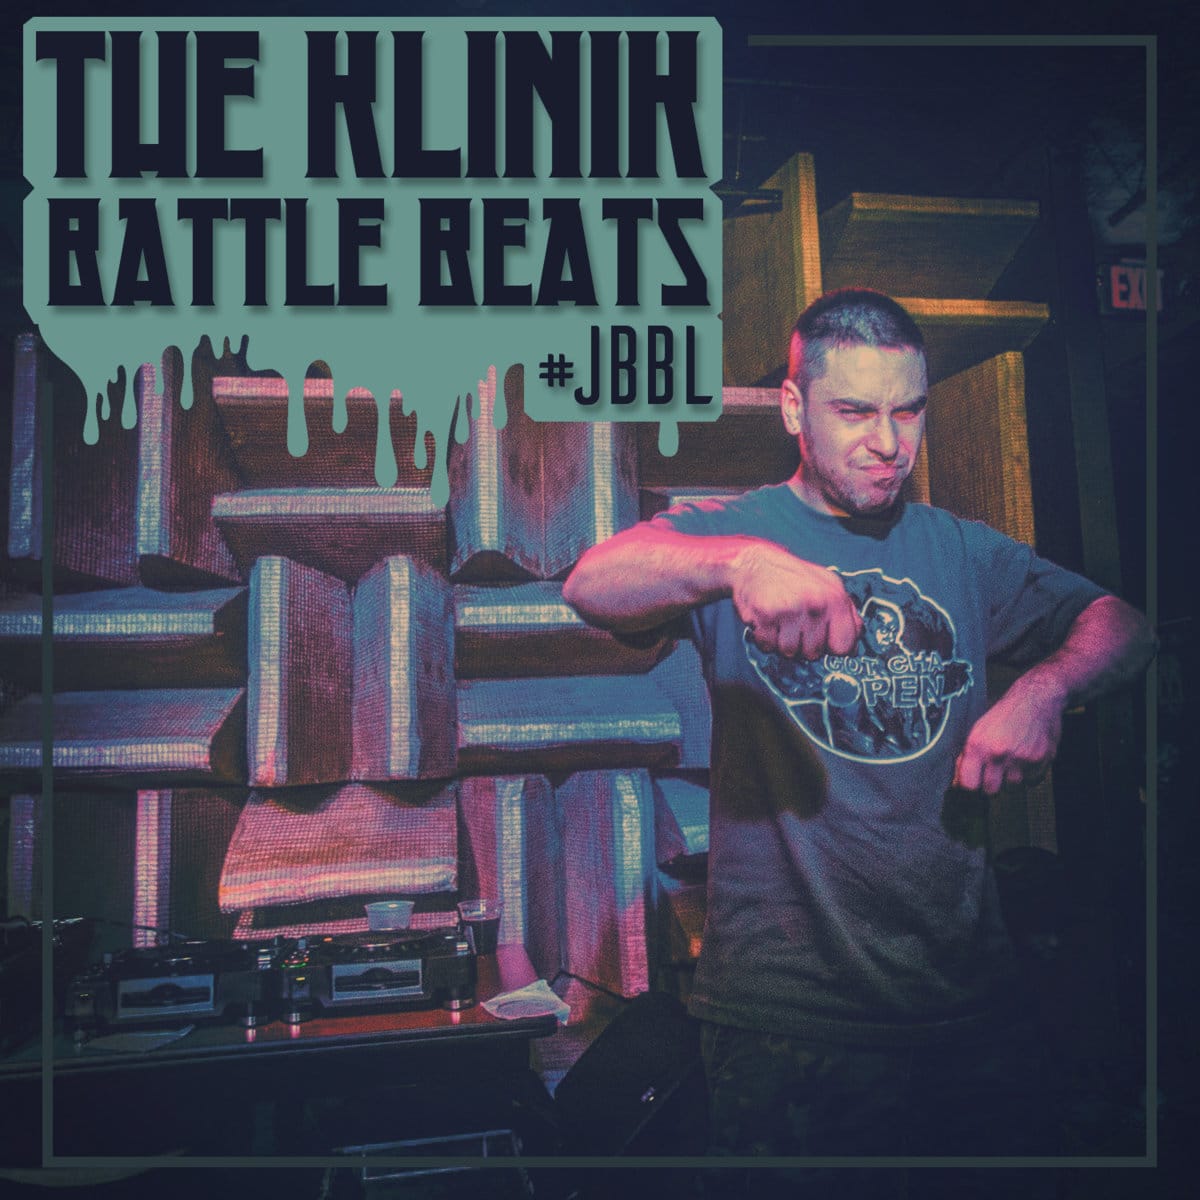 The Klinik - "JBBL Battle Beats" (Release)